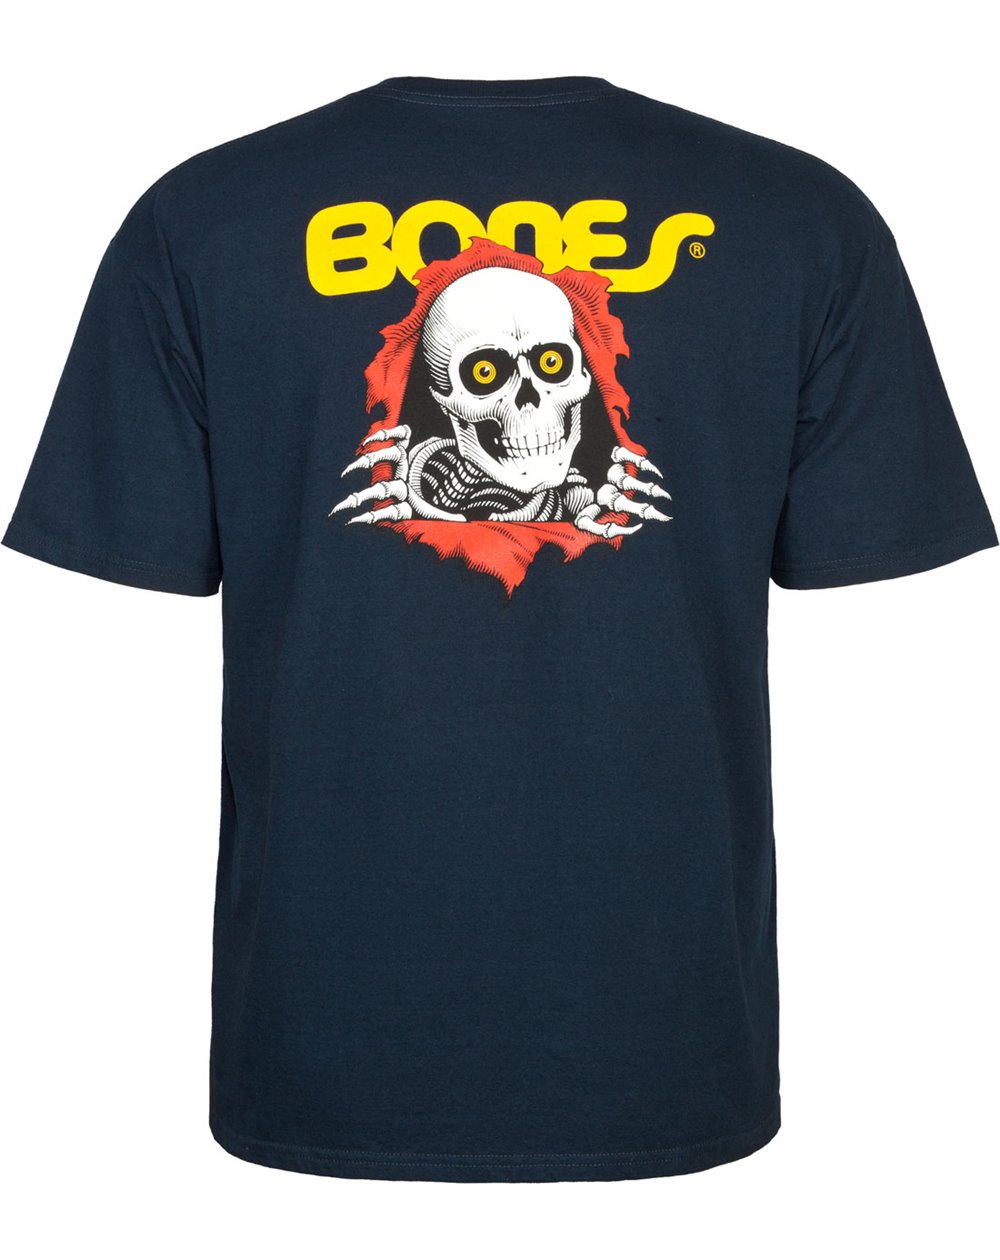 Powell Peralta Men's T-Shirt Ripper (Navy)